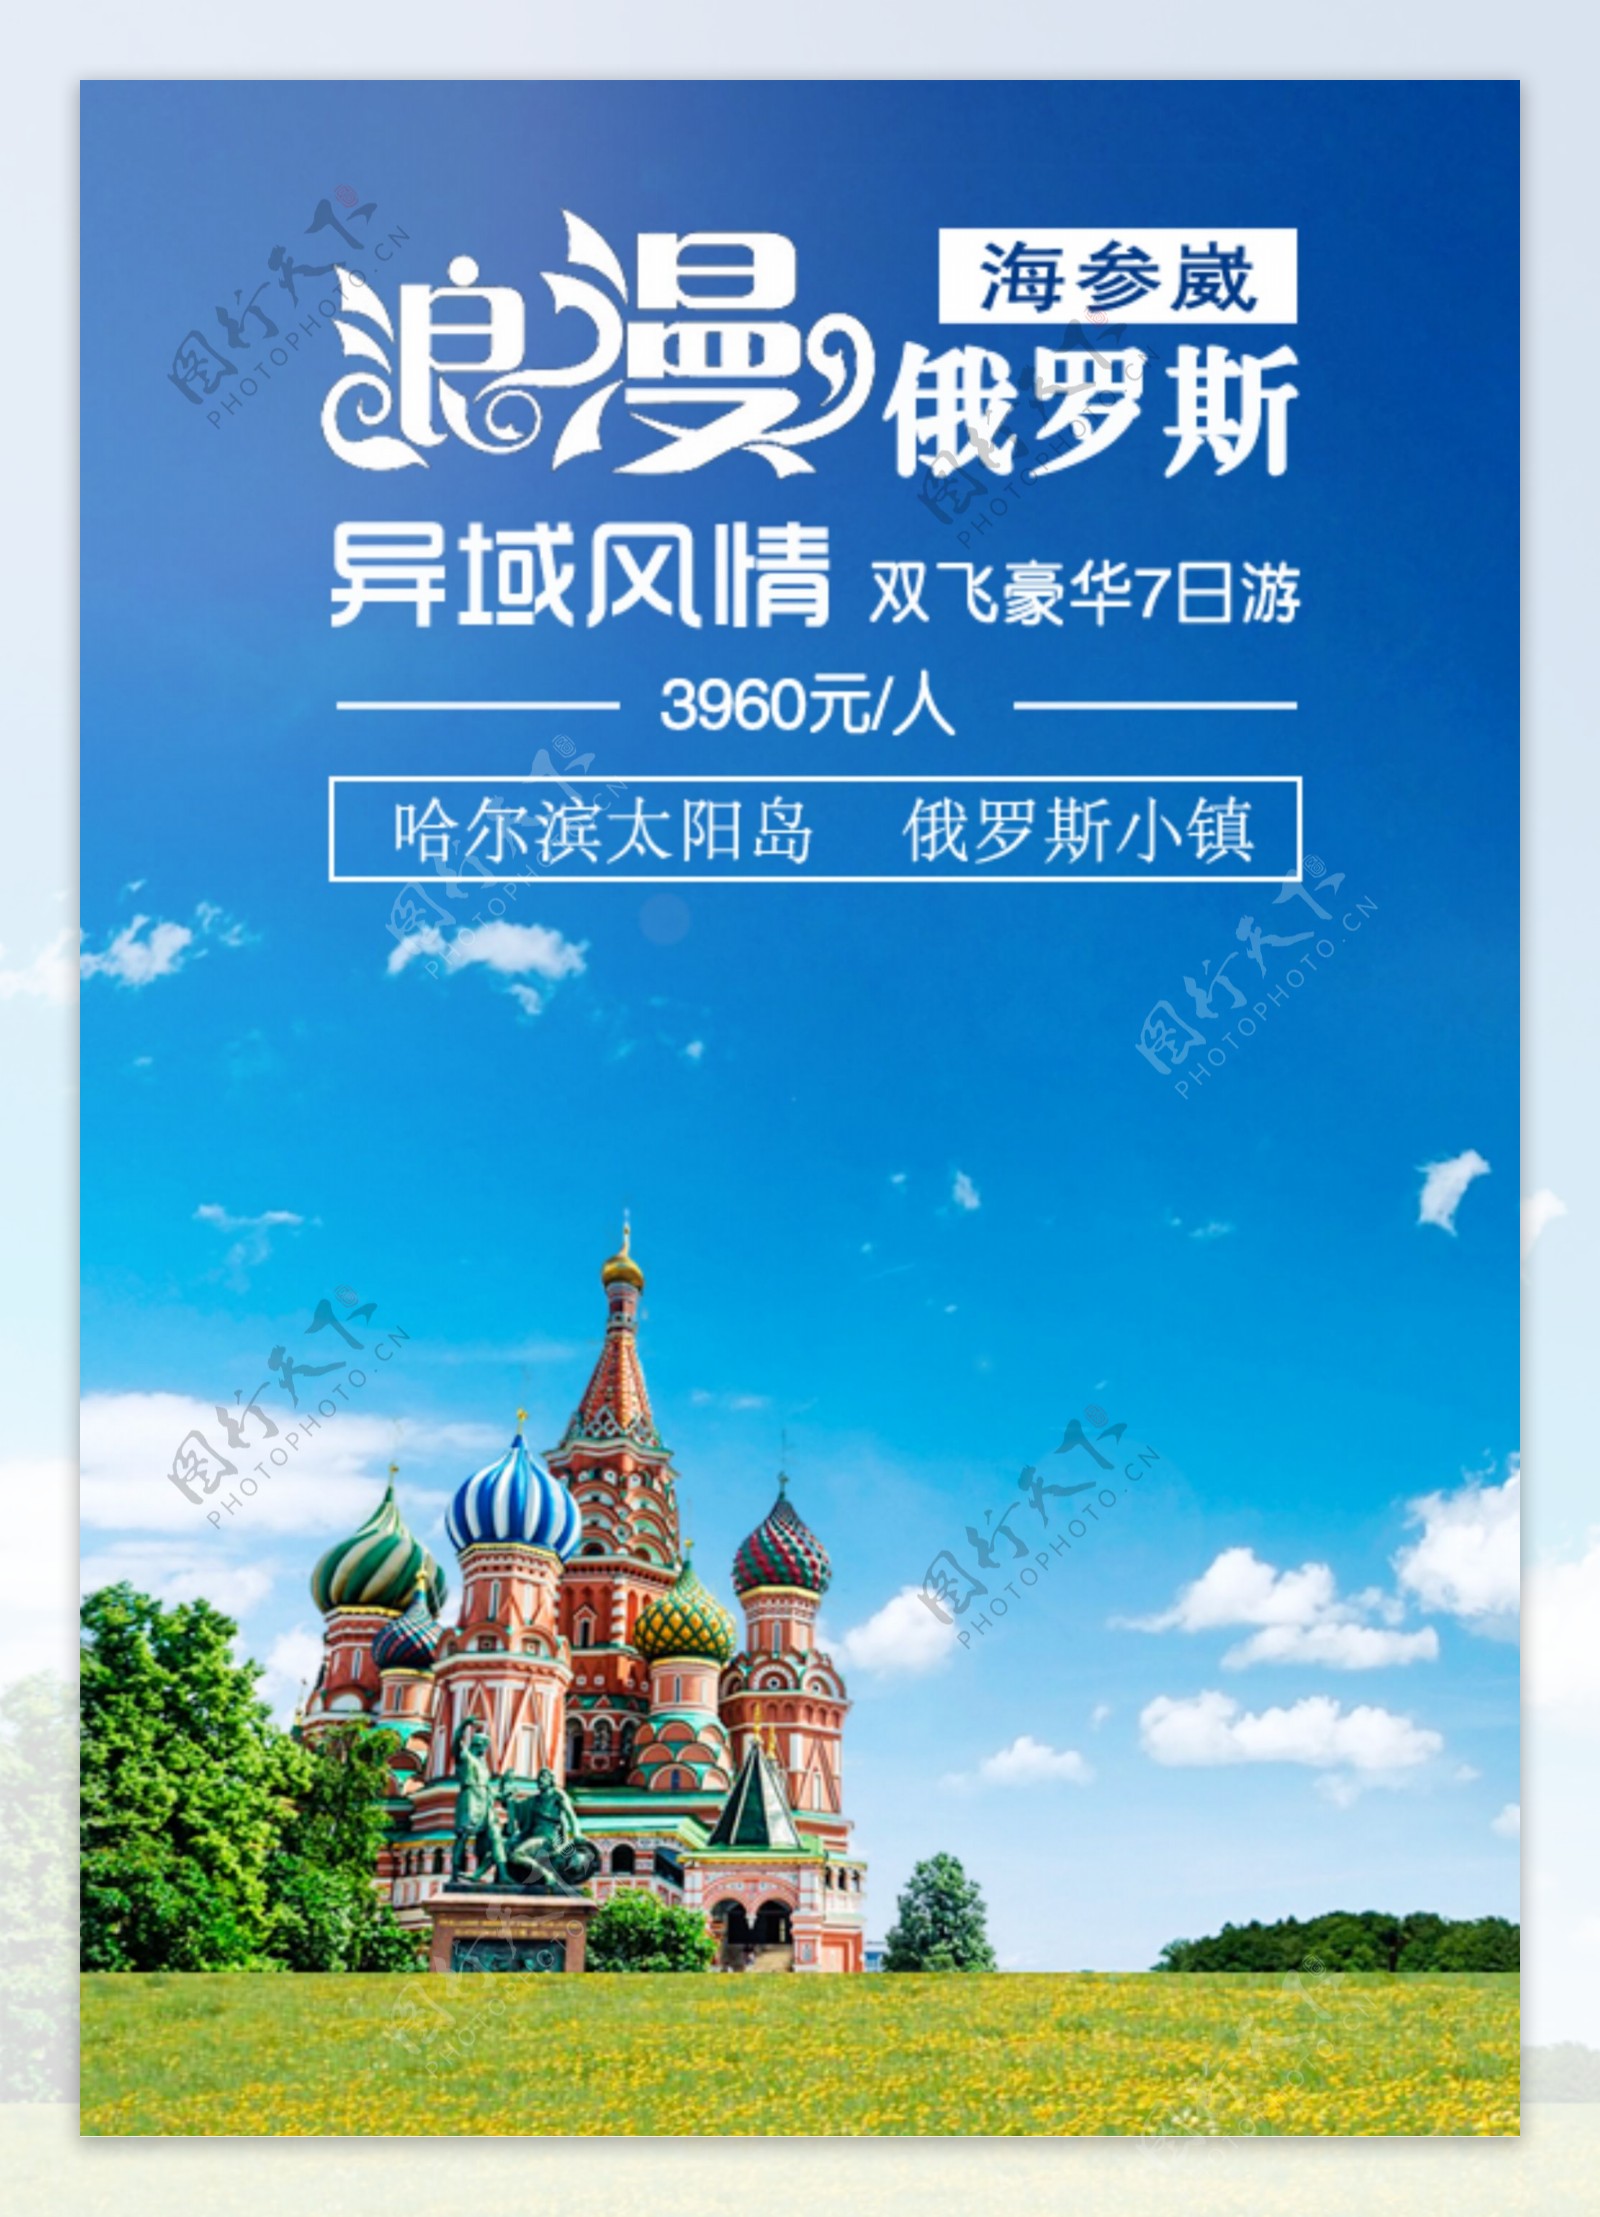 浪漫俄罗斯旅游广告图片